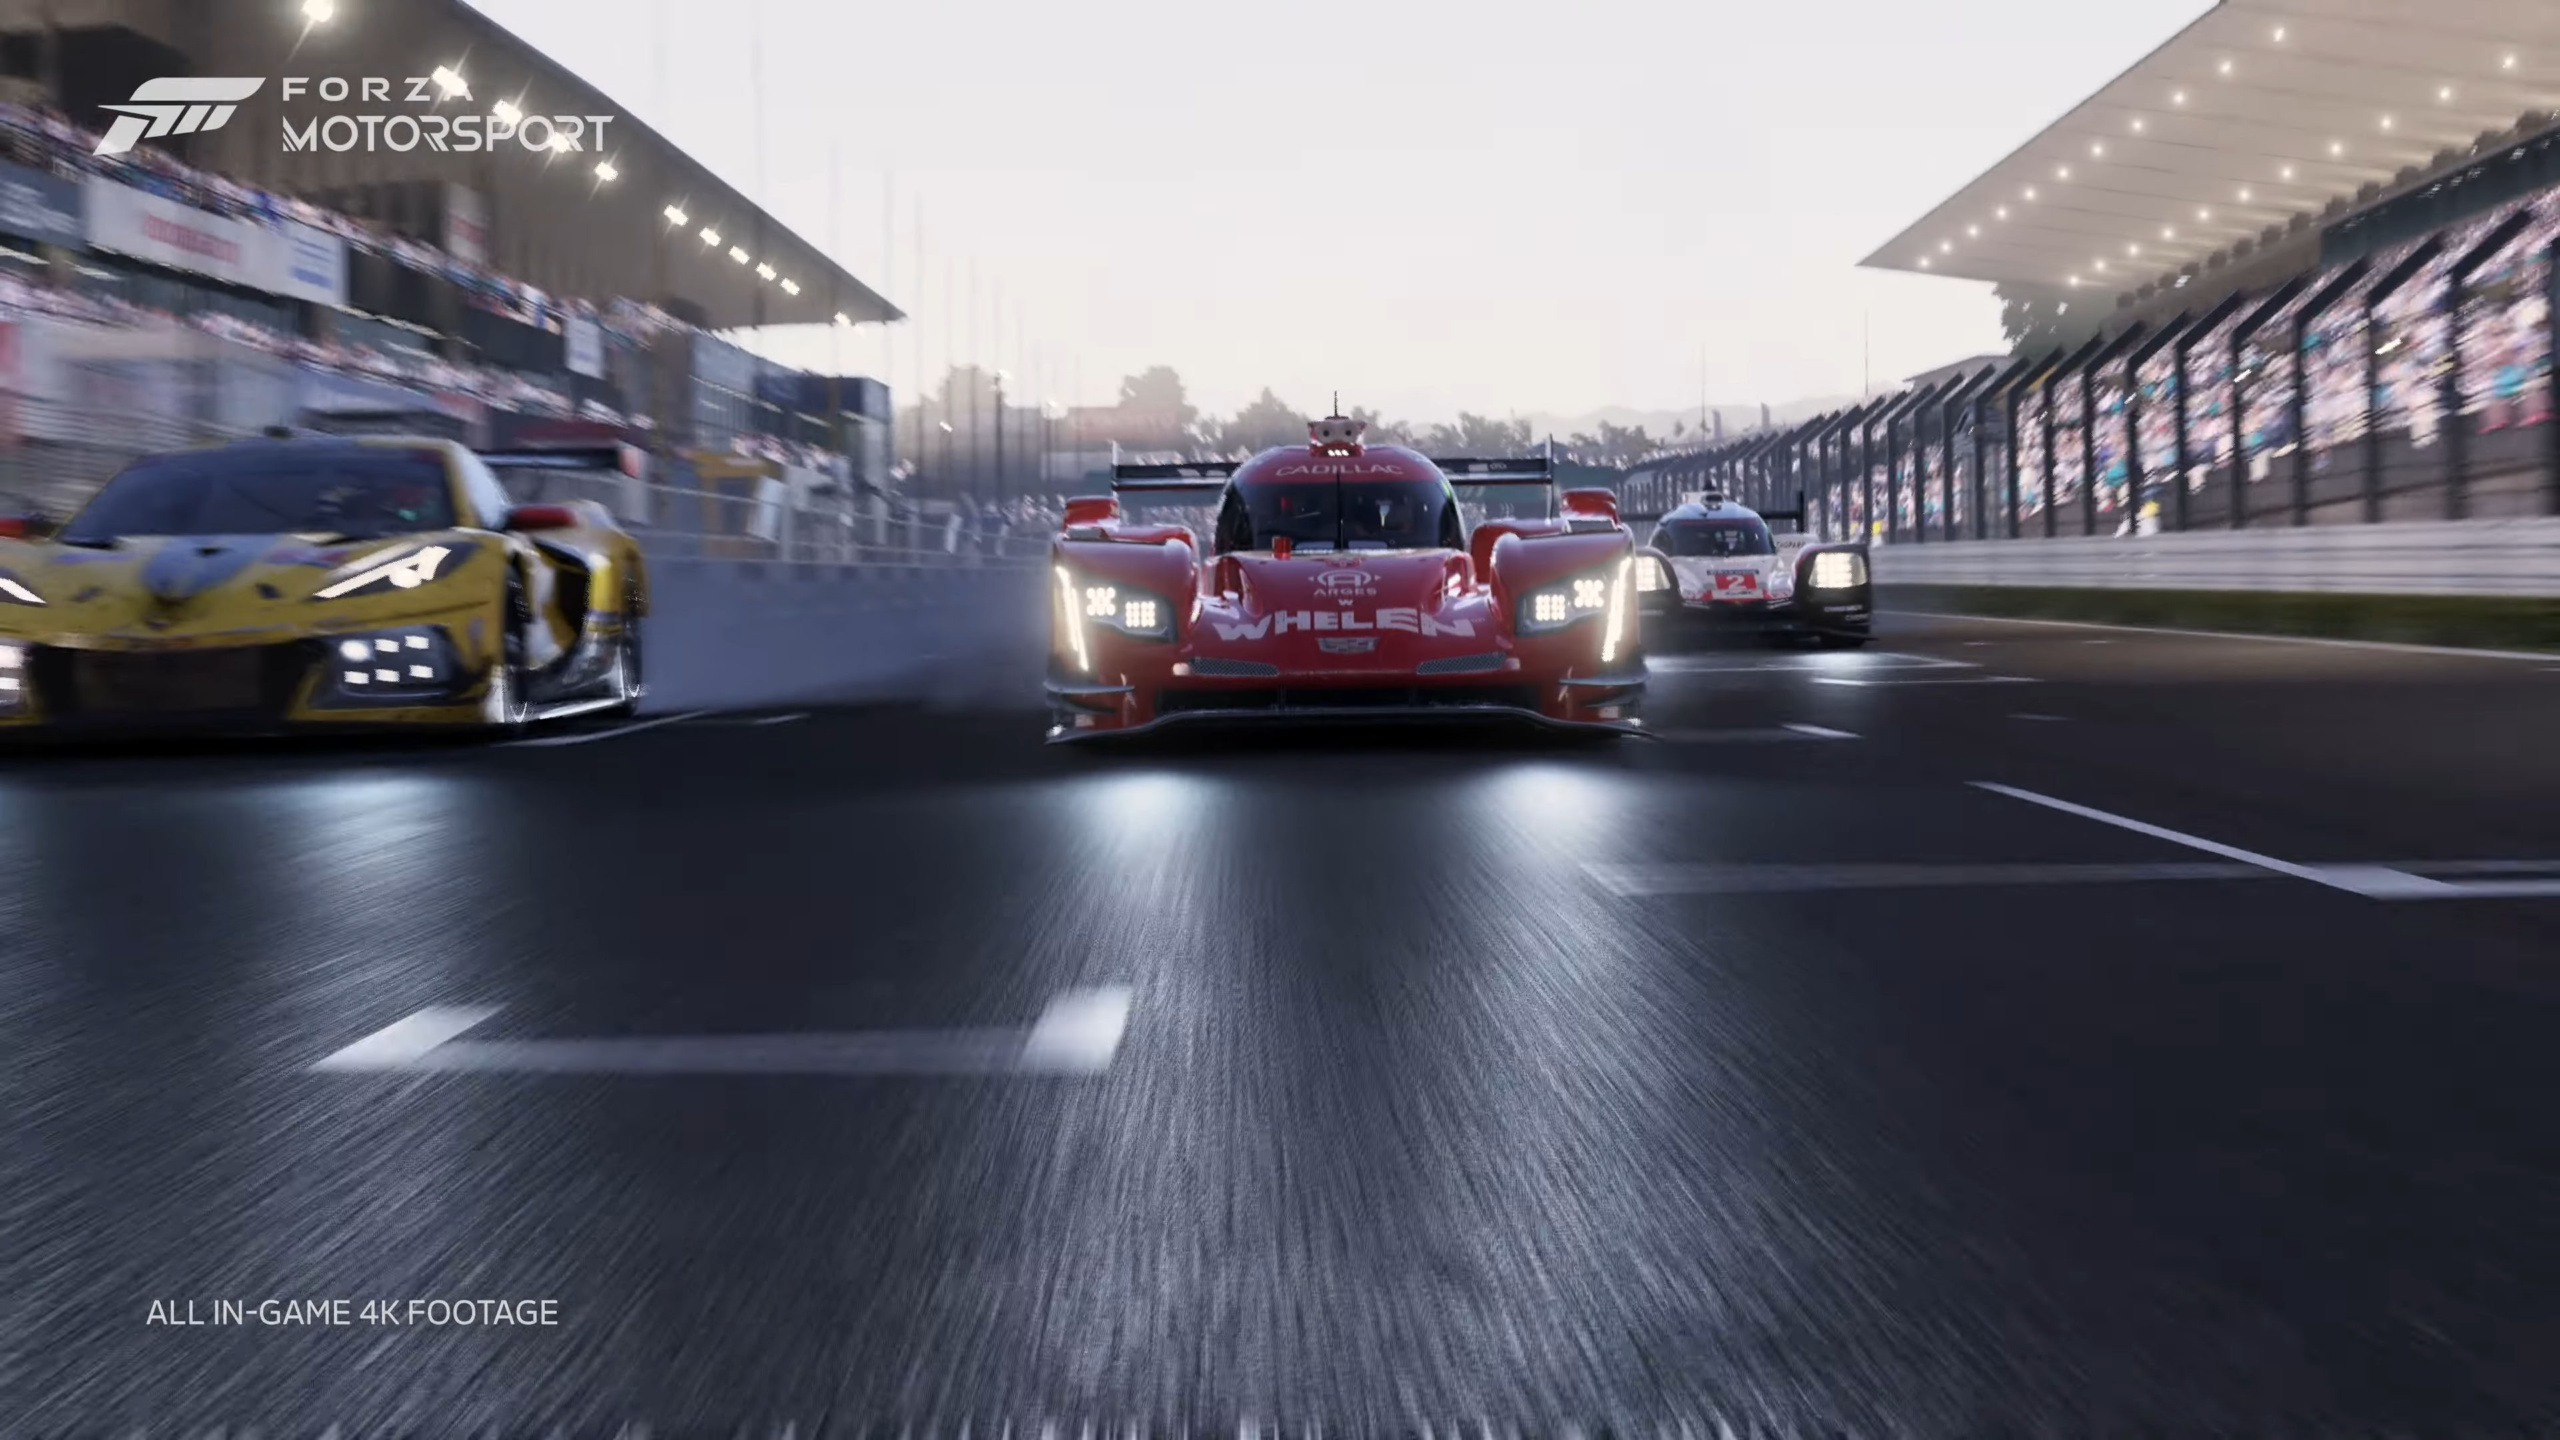 Опубликован 6-минутный трейлер Forza Motorsport, игра выйдет в 2023 году